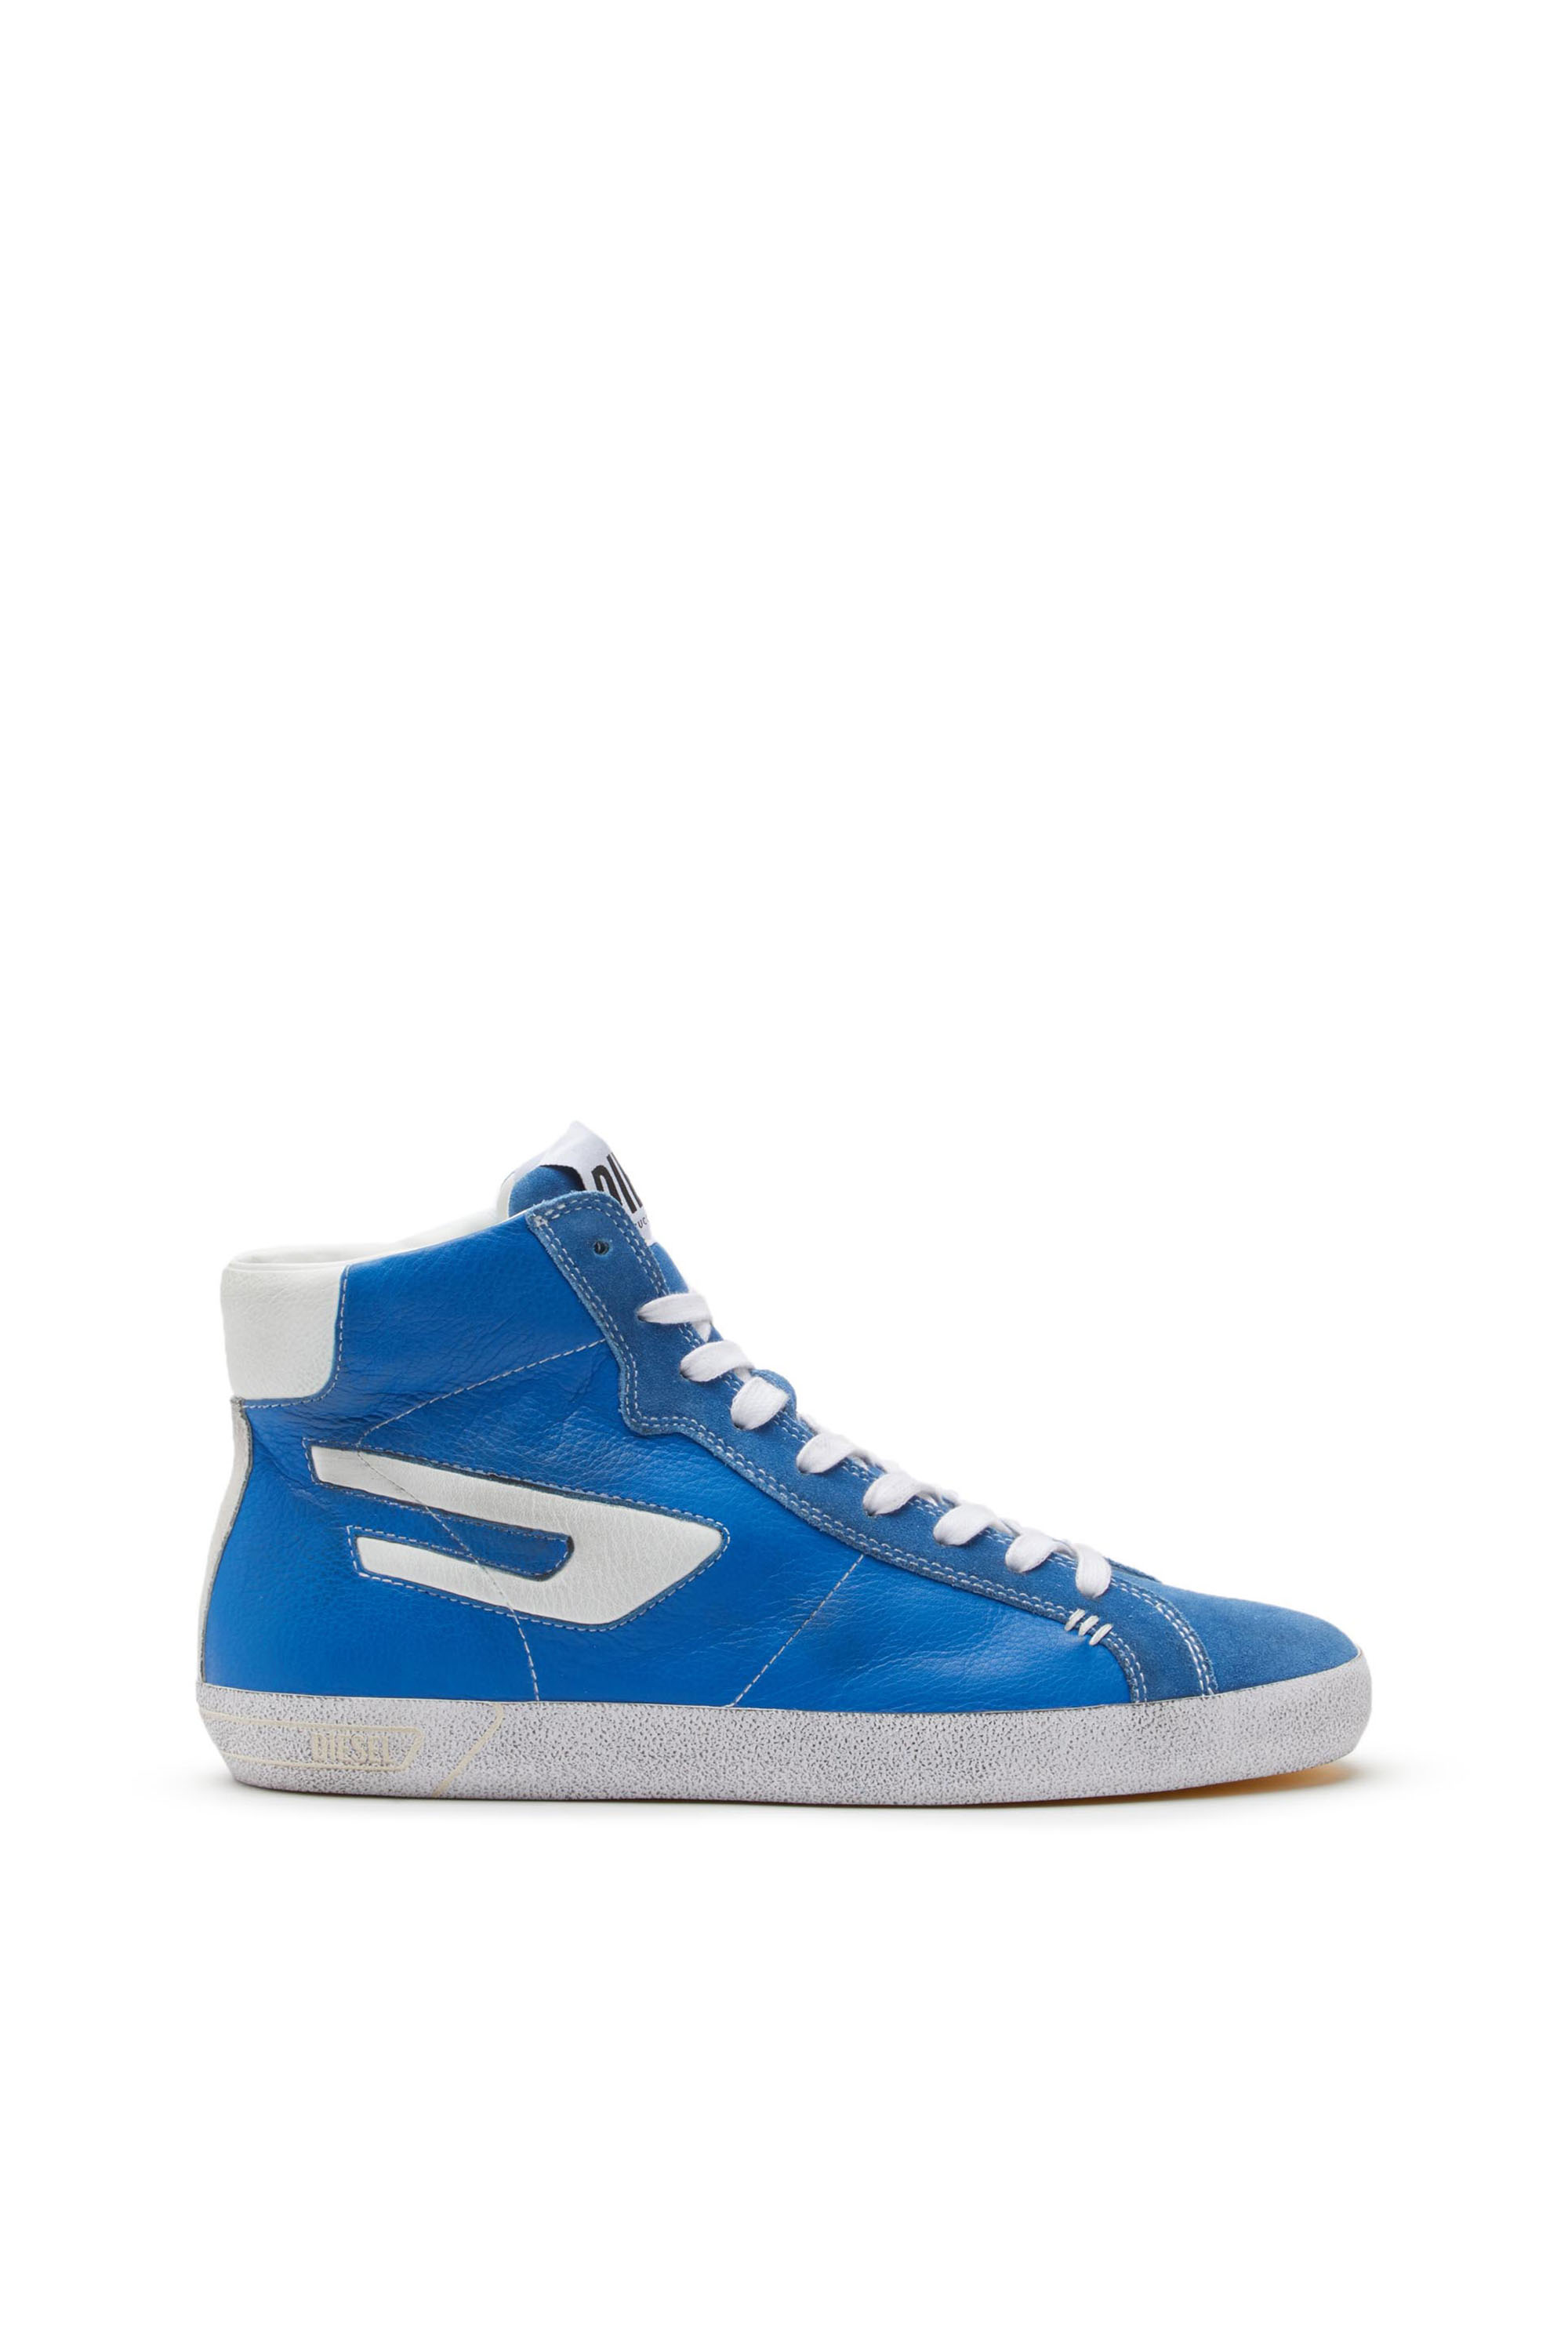 Diesel - Sneaker alte in pelle con logo D - Sneakers - Uomo - Blu